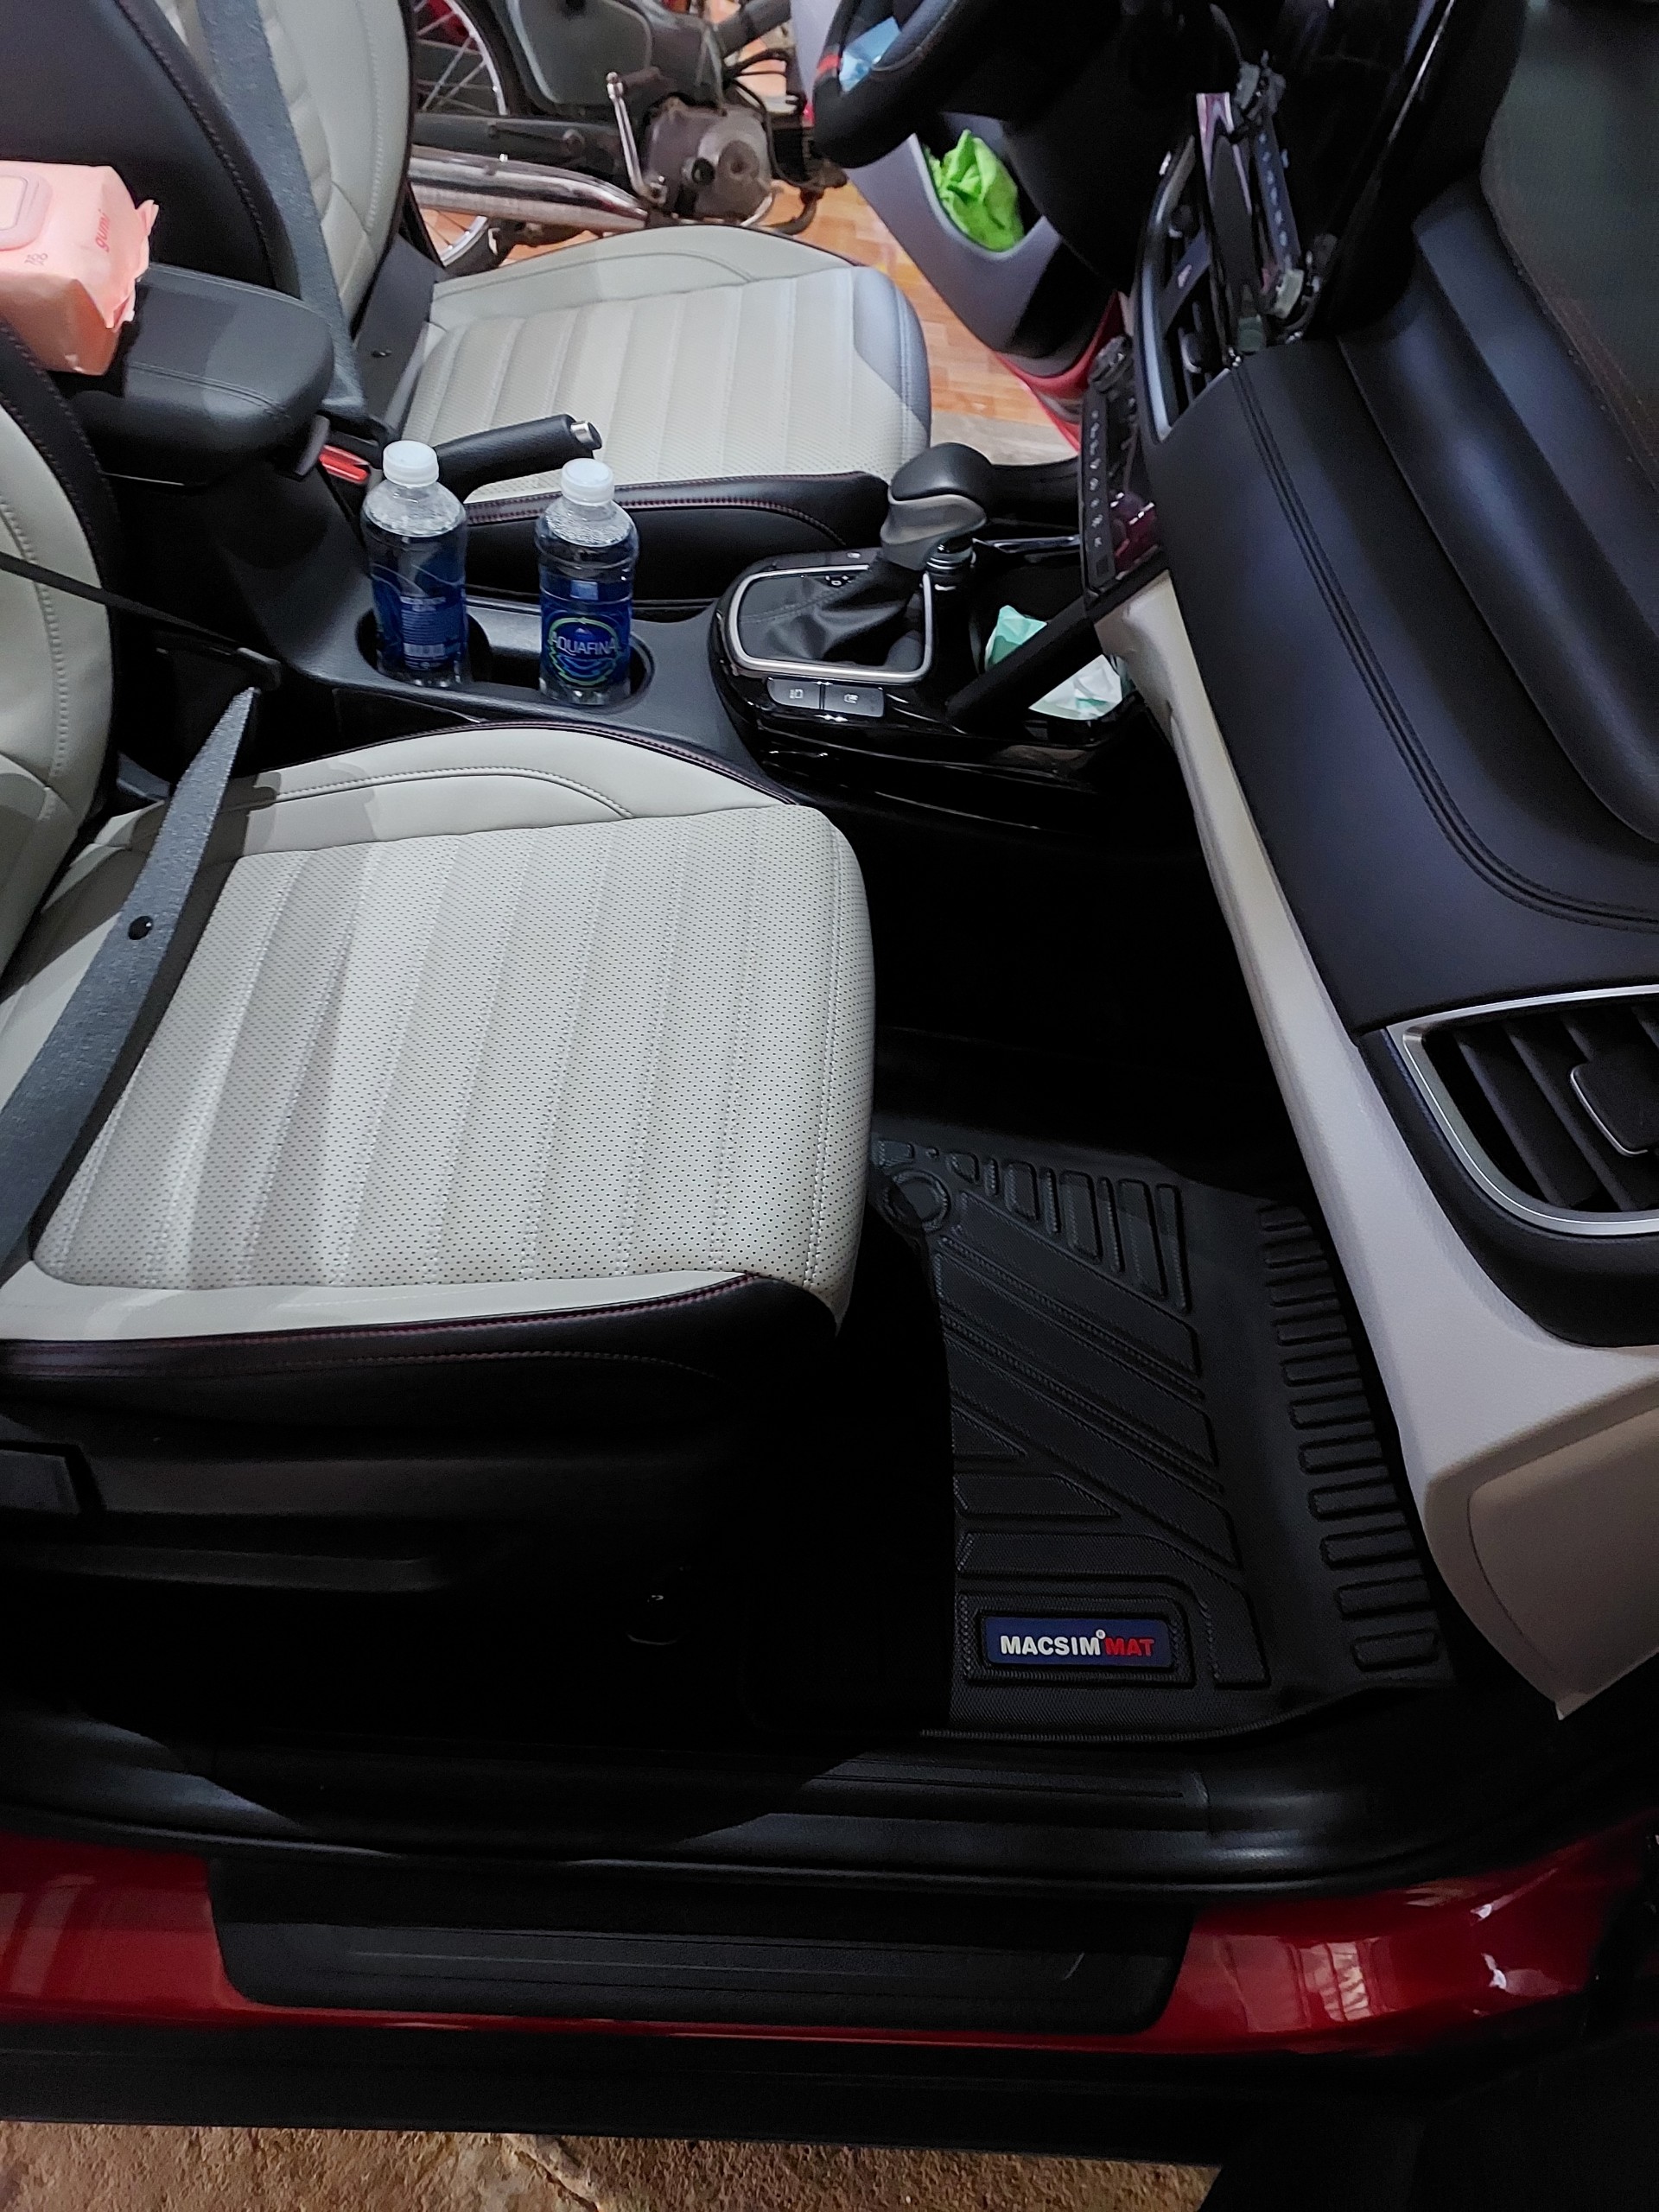 Thảm lót sàn xe ô tô KIA SELTOS 2020 - 2023 Nhãn hiệu Macsim chất liệu nhựa TPV cao cấp màu đen